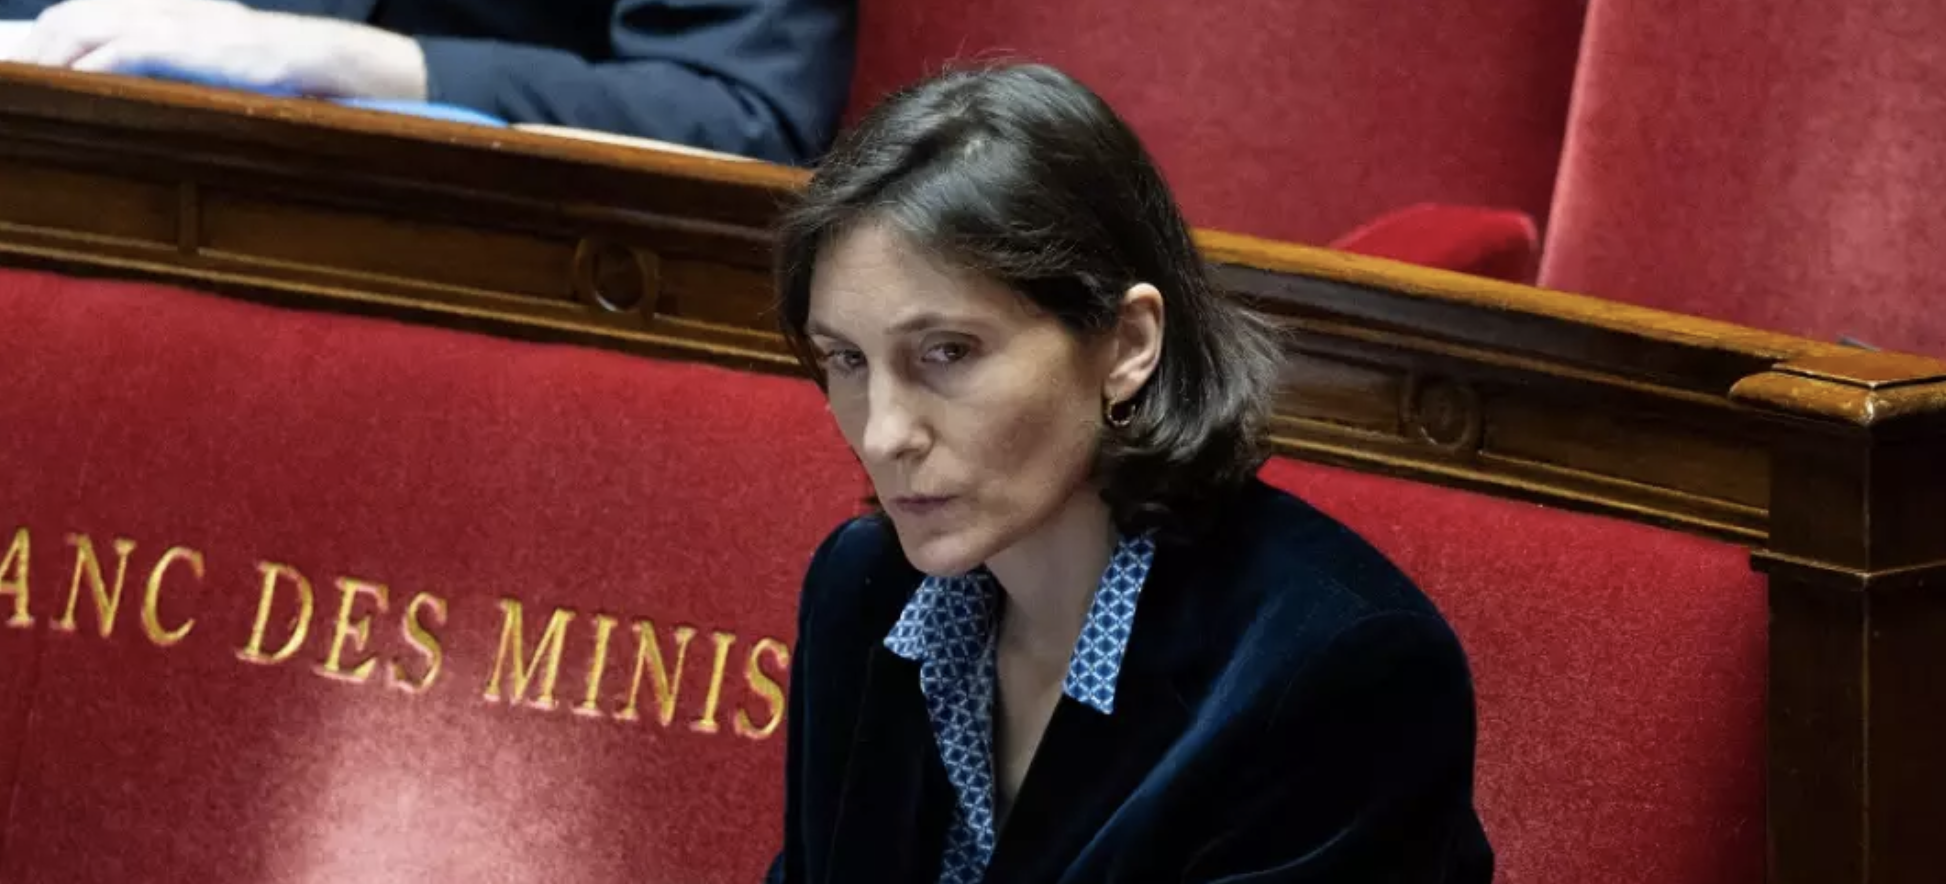 "Il faut qu’elle dégage" : les élus de la majorité irrités par l’affaire Amélie Oudéa-Castéra